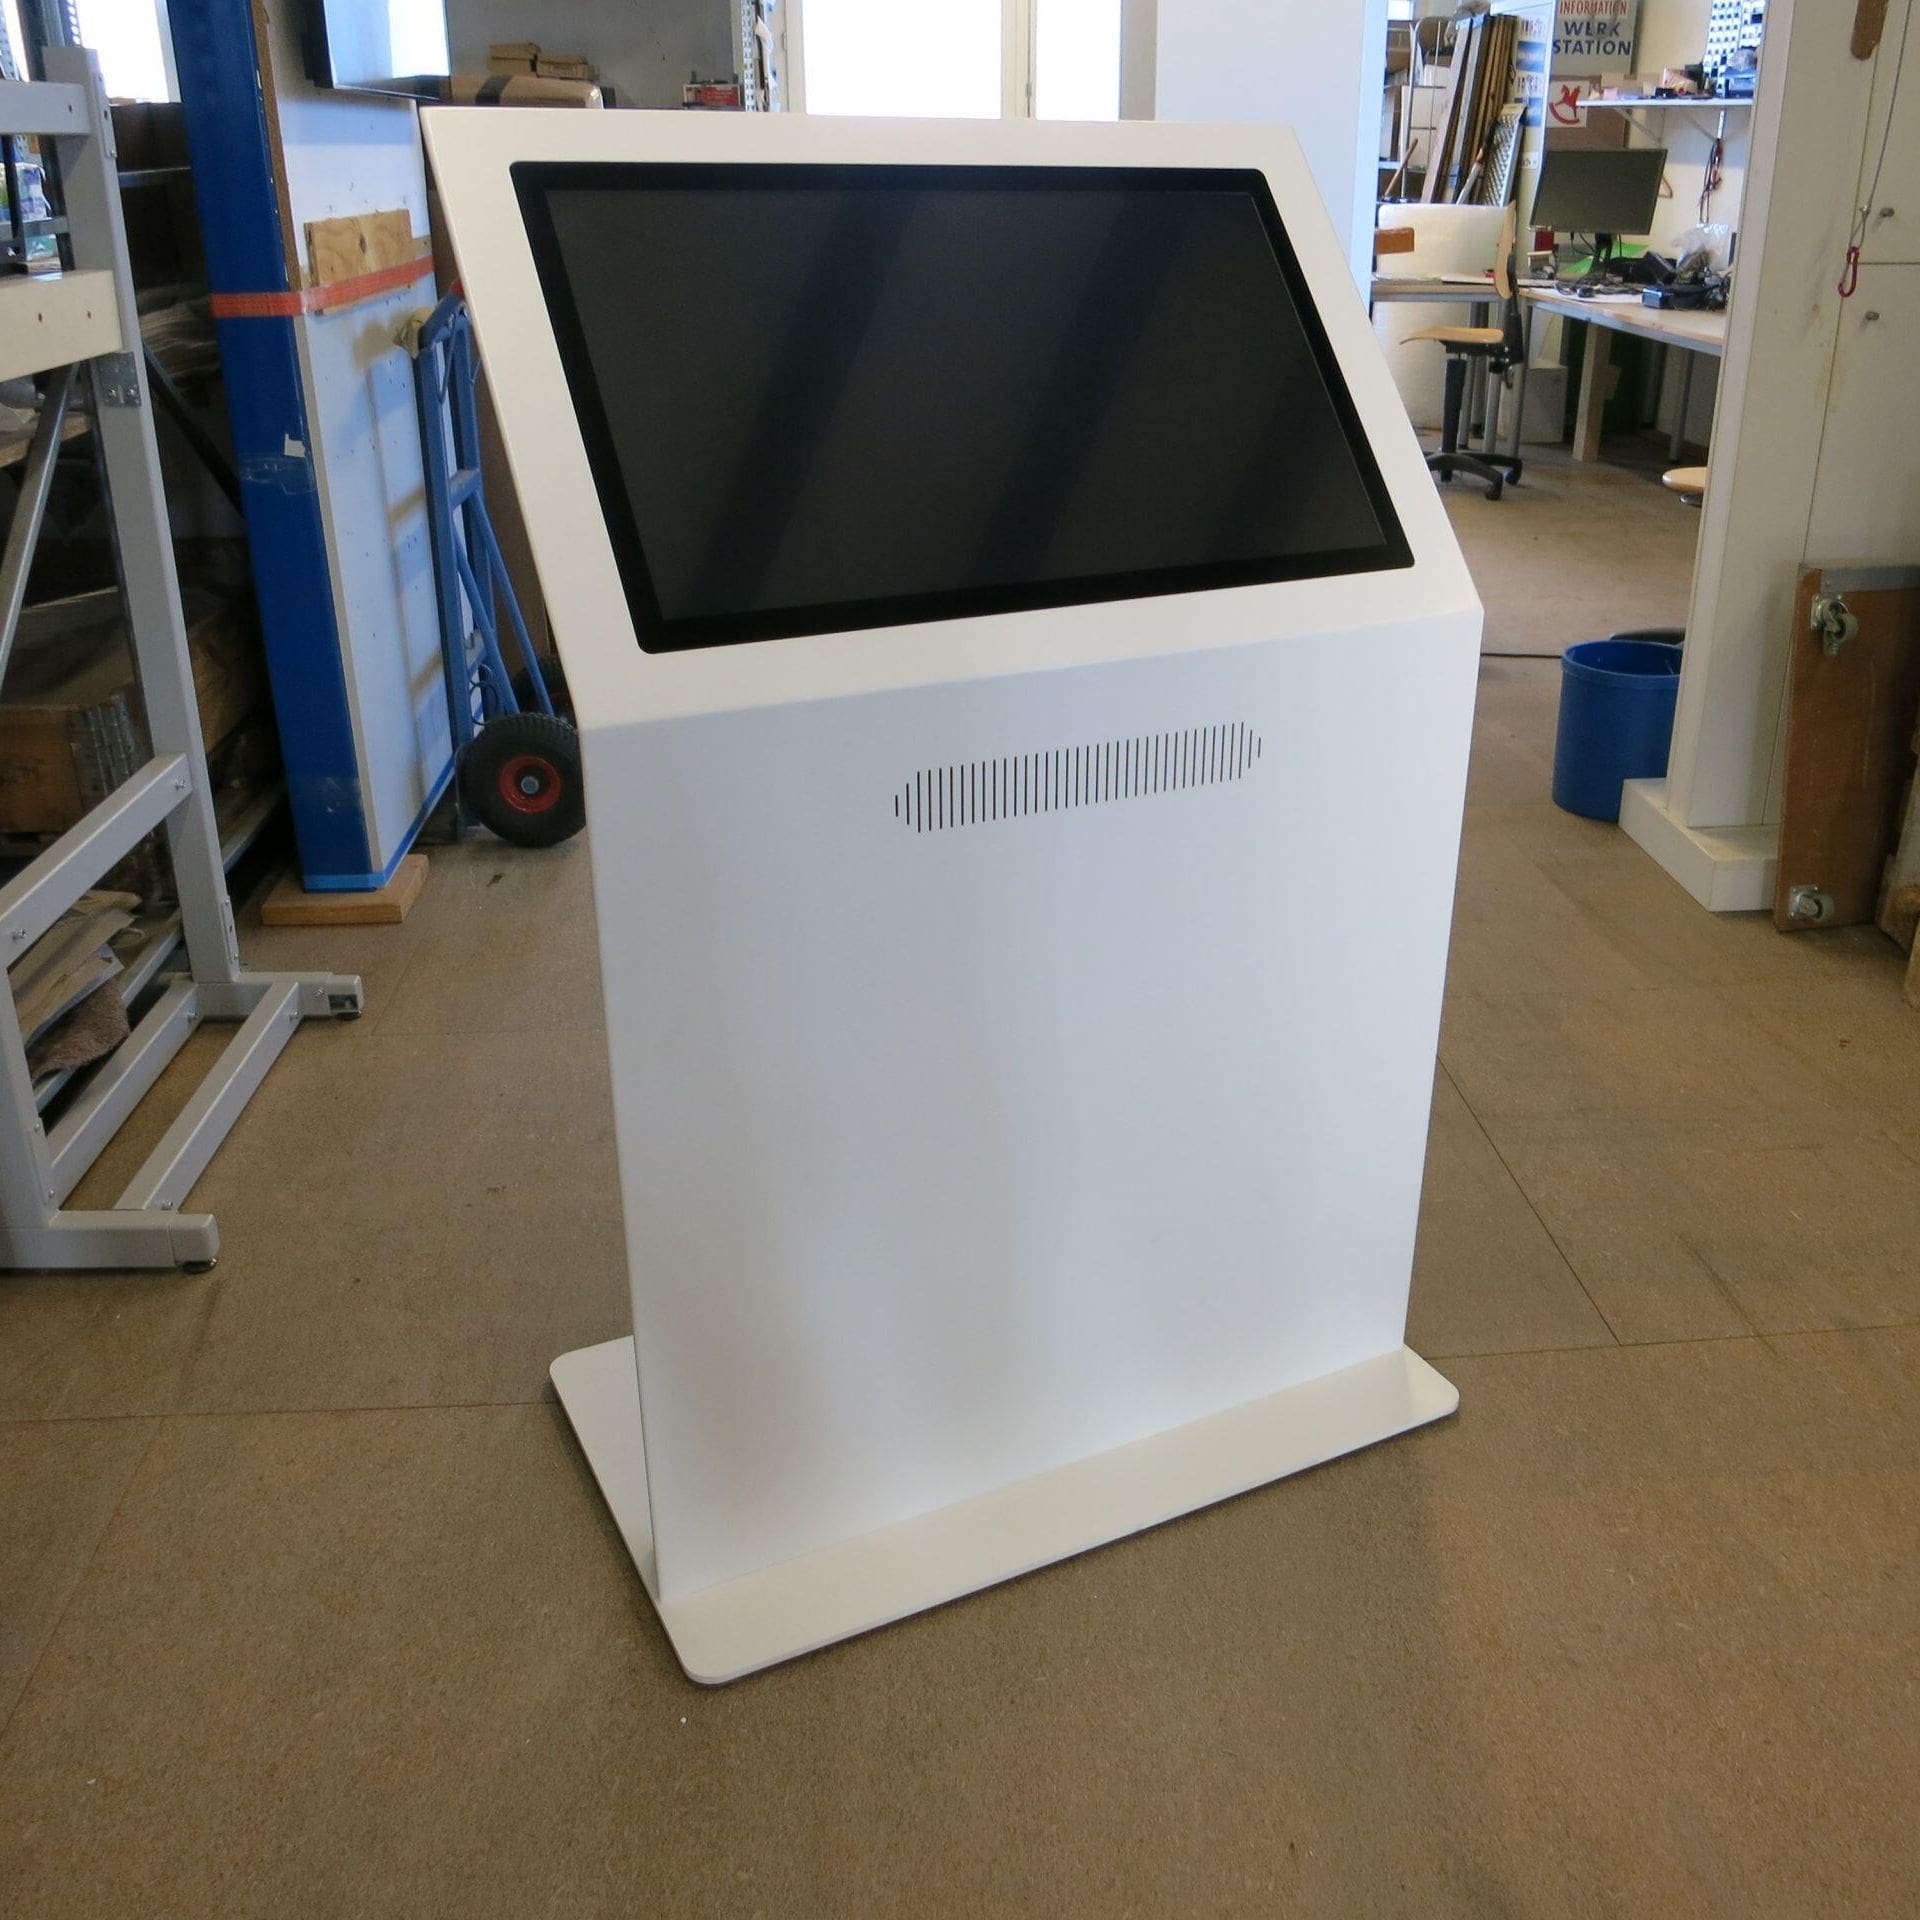 Touchscreen Kiosk Terminal Infopult Elon in Signalweiß (RAL 9003) mit schwarzem Display und einem überarbeiteten Lautsprecher-Design.